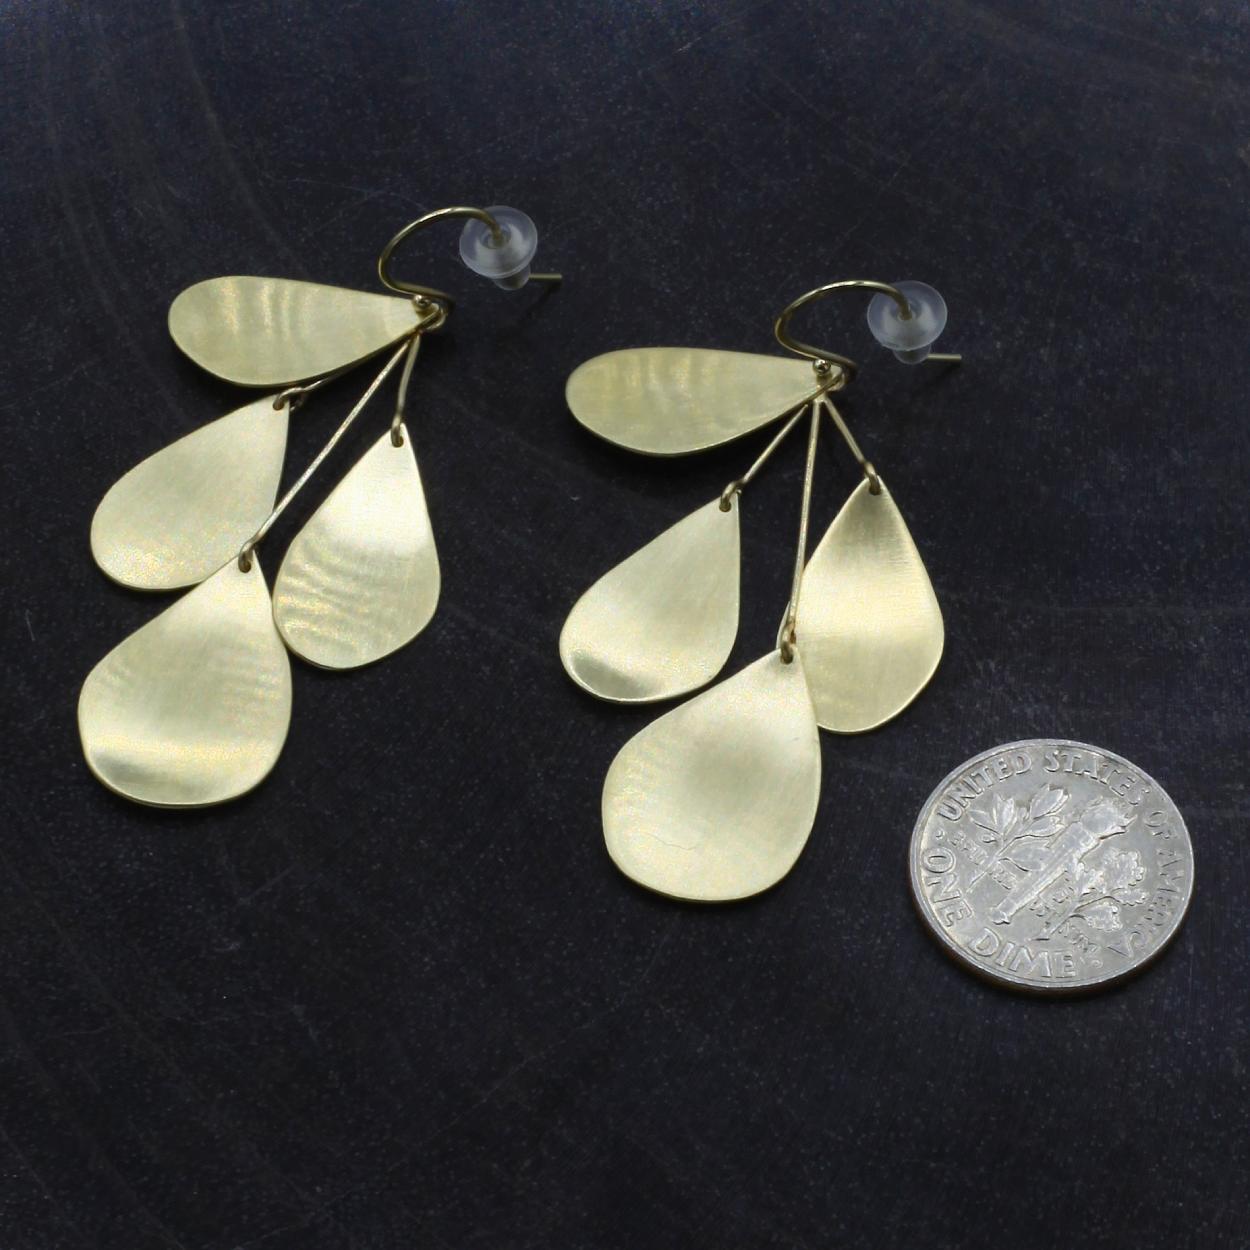 Sarah McGuire Studio | "Mobile" 10k Gold Drop Earrings | Firecracker